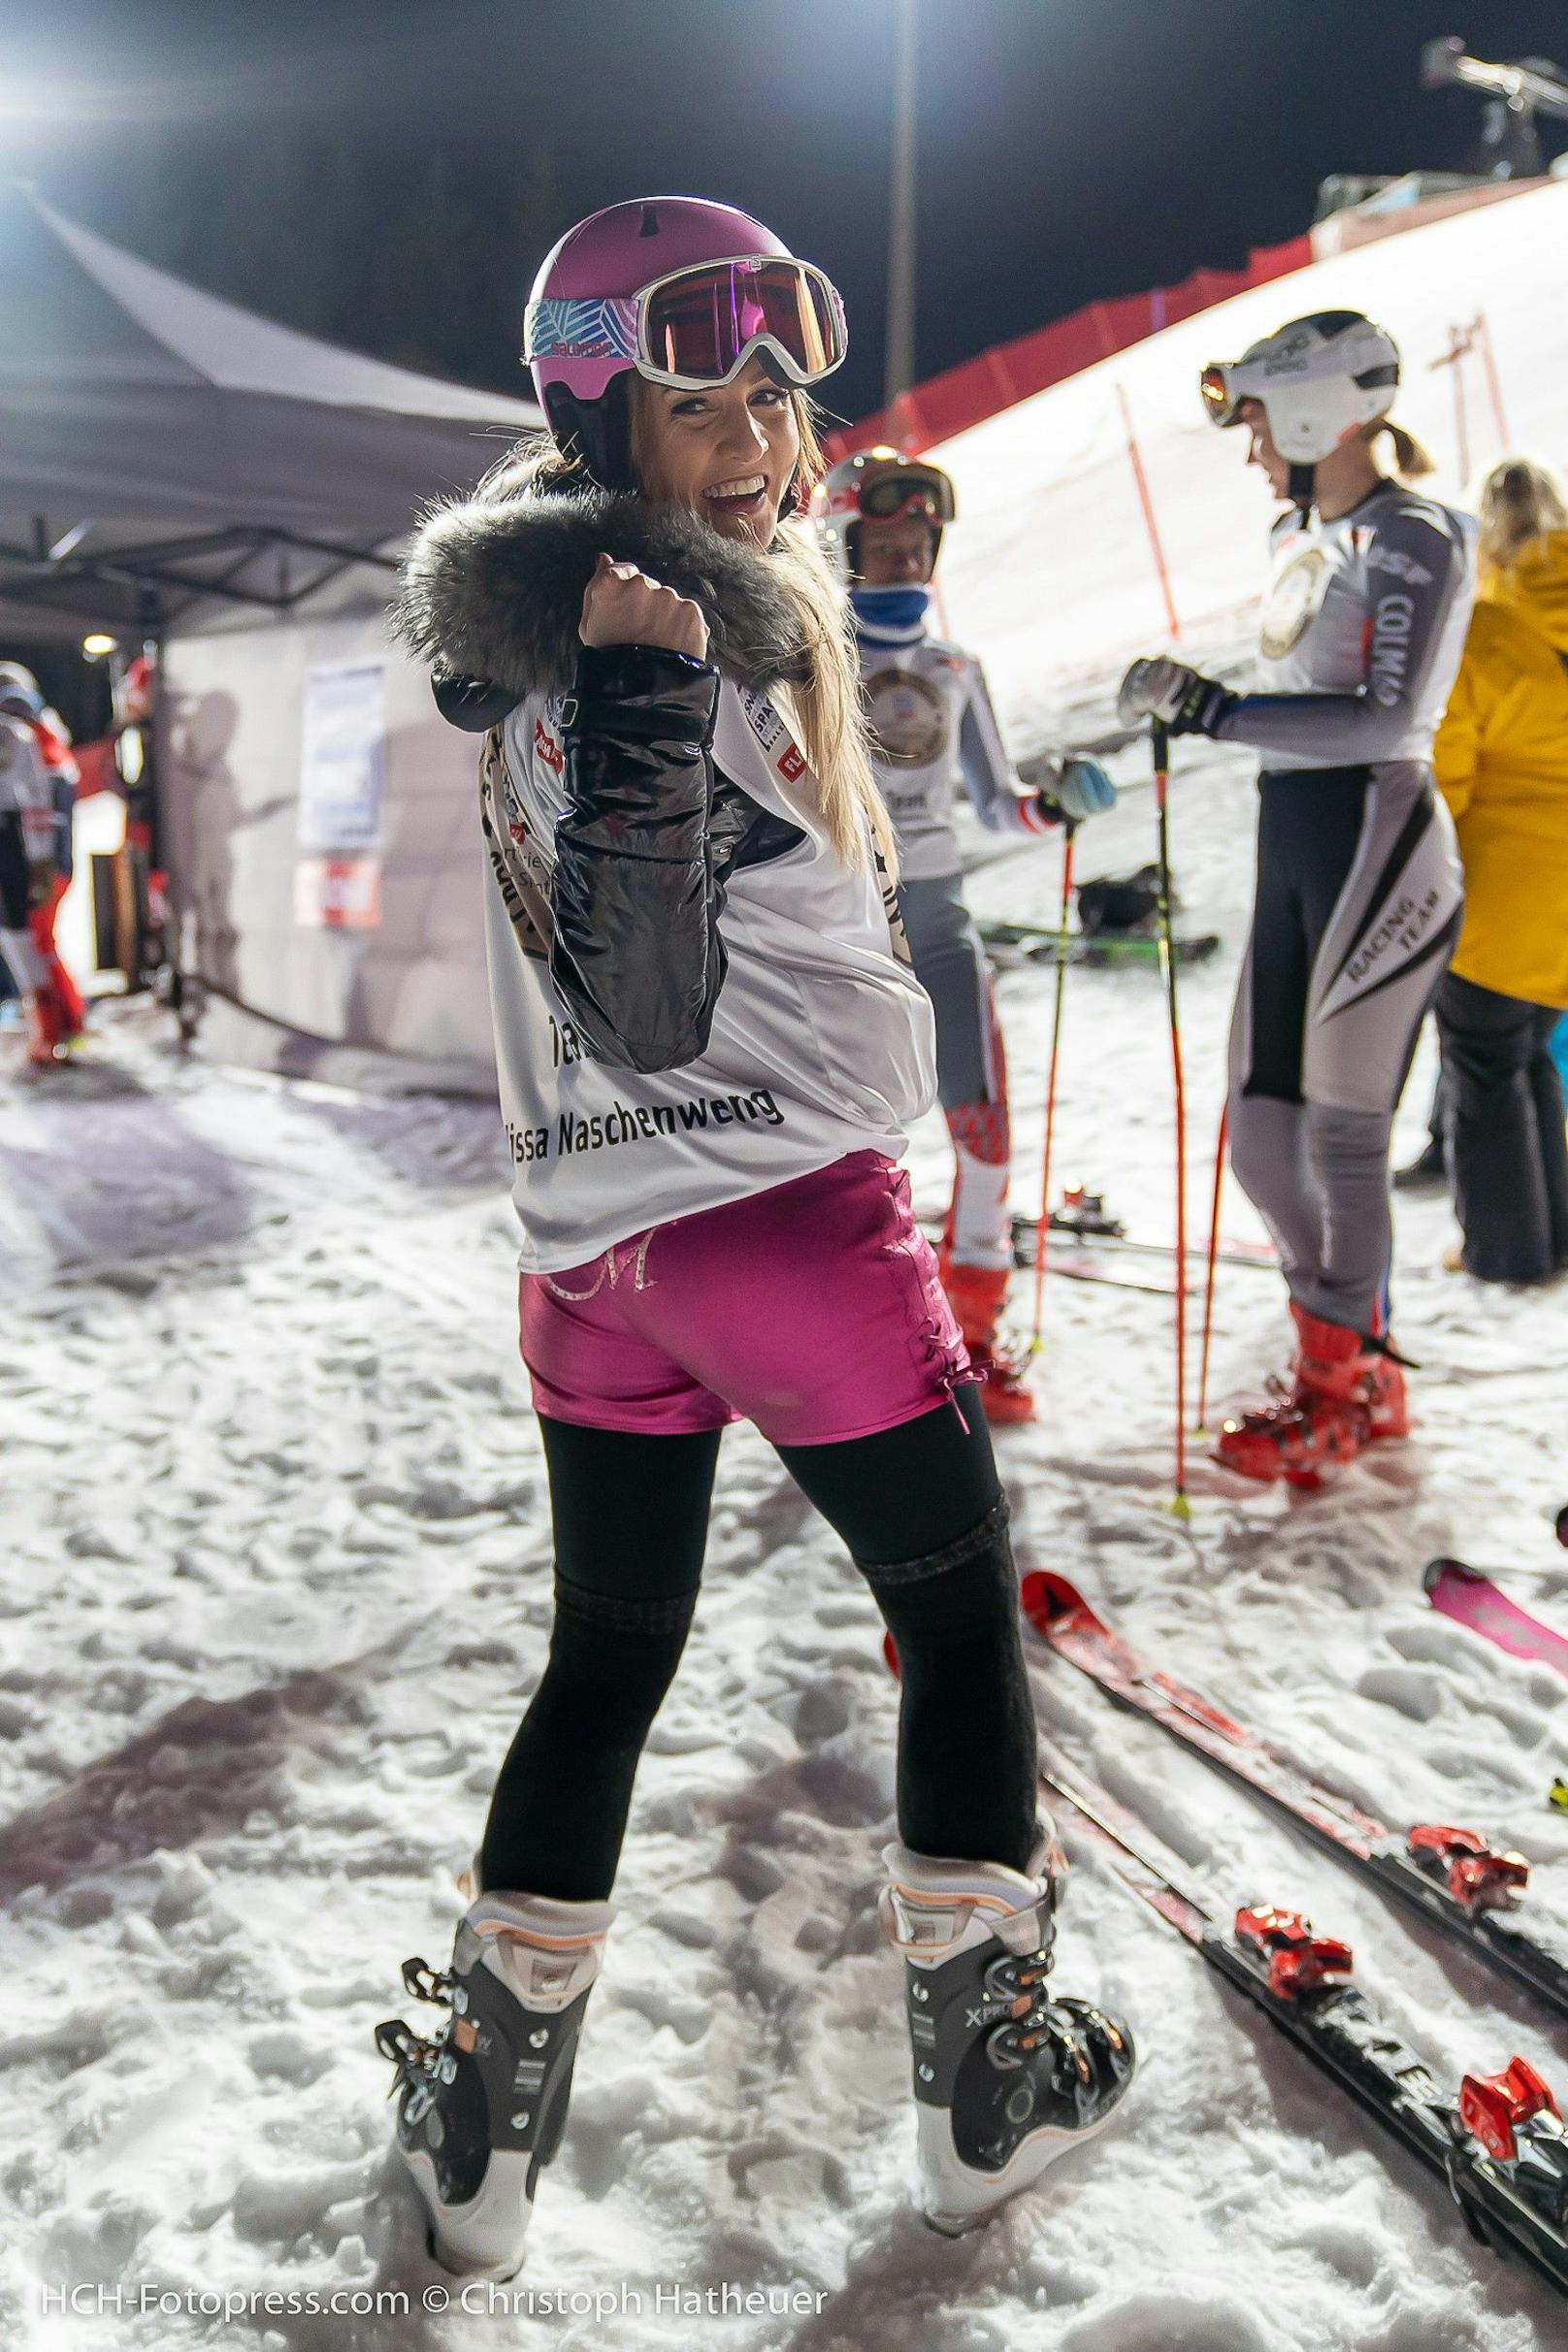 "Mein Körper zitterte": Melissa schwärmt für Ski-Star